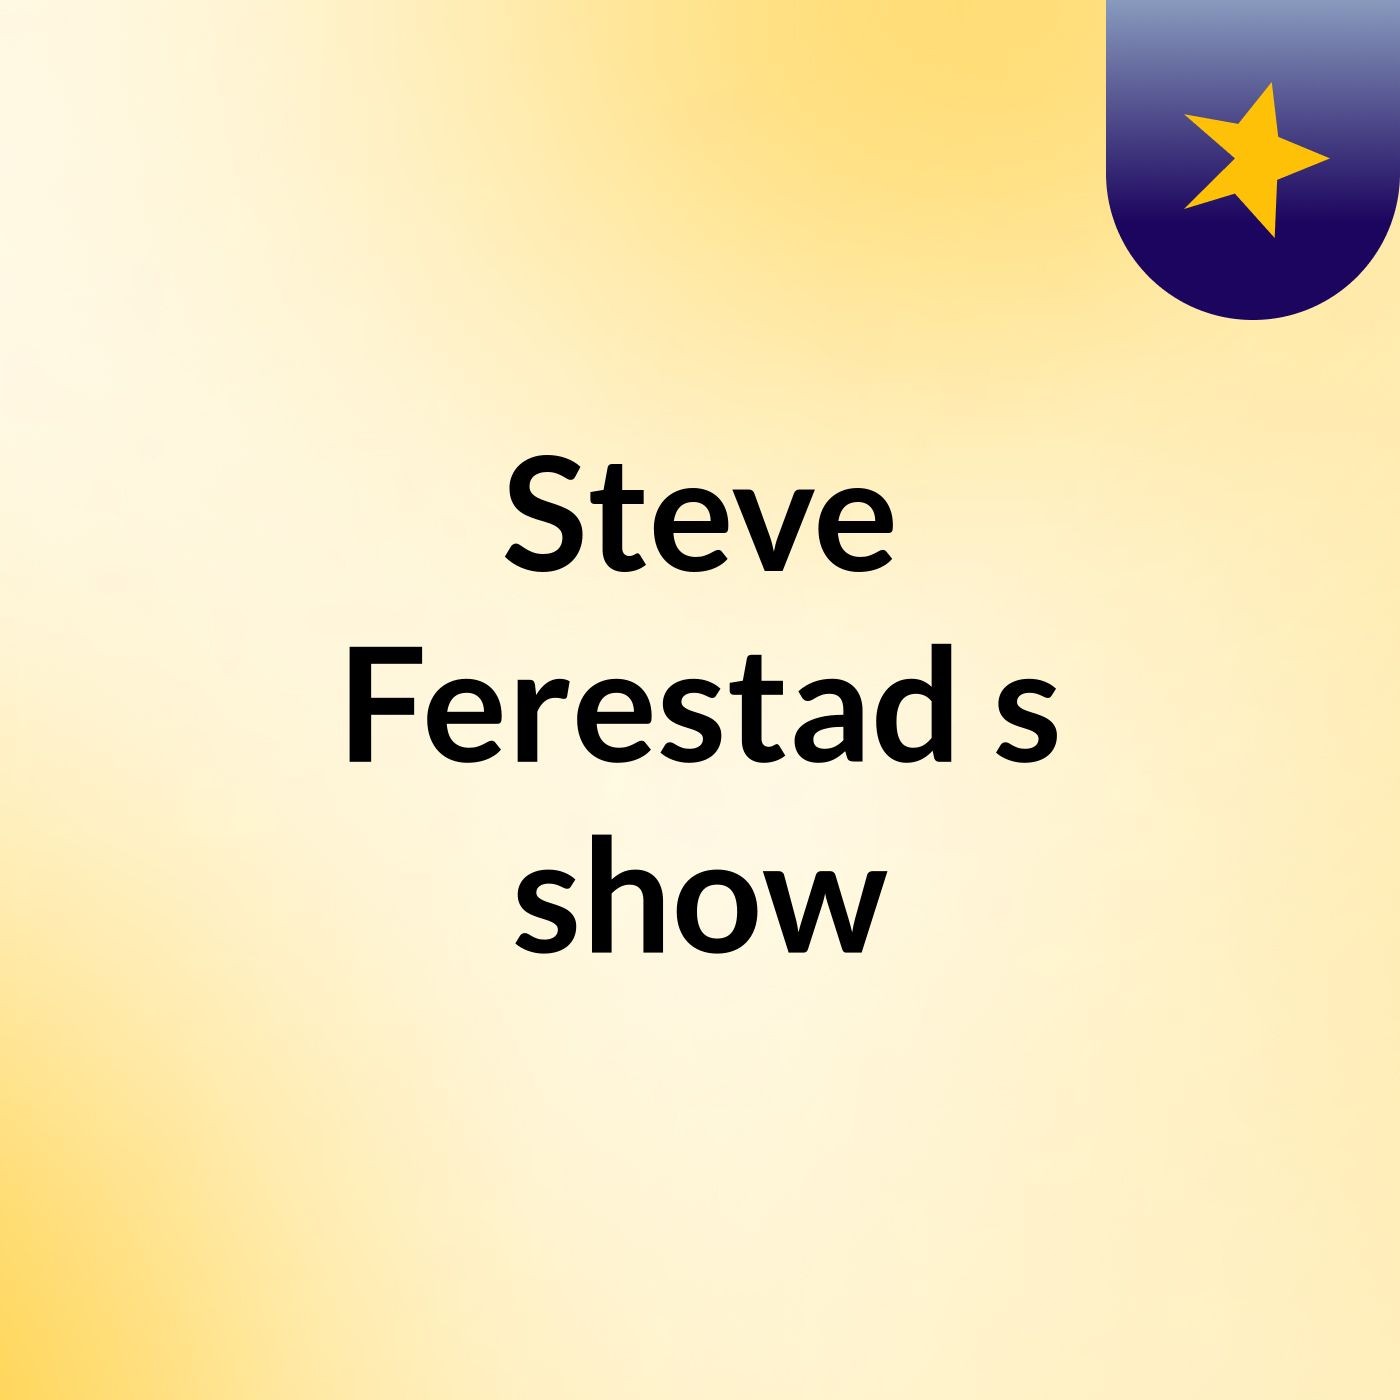 Episode 8 - Steve Ferestad's show